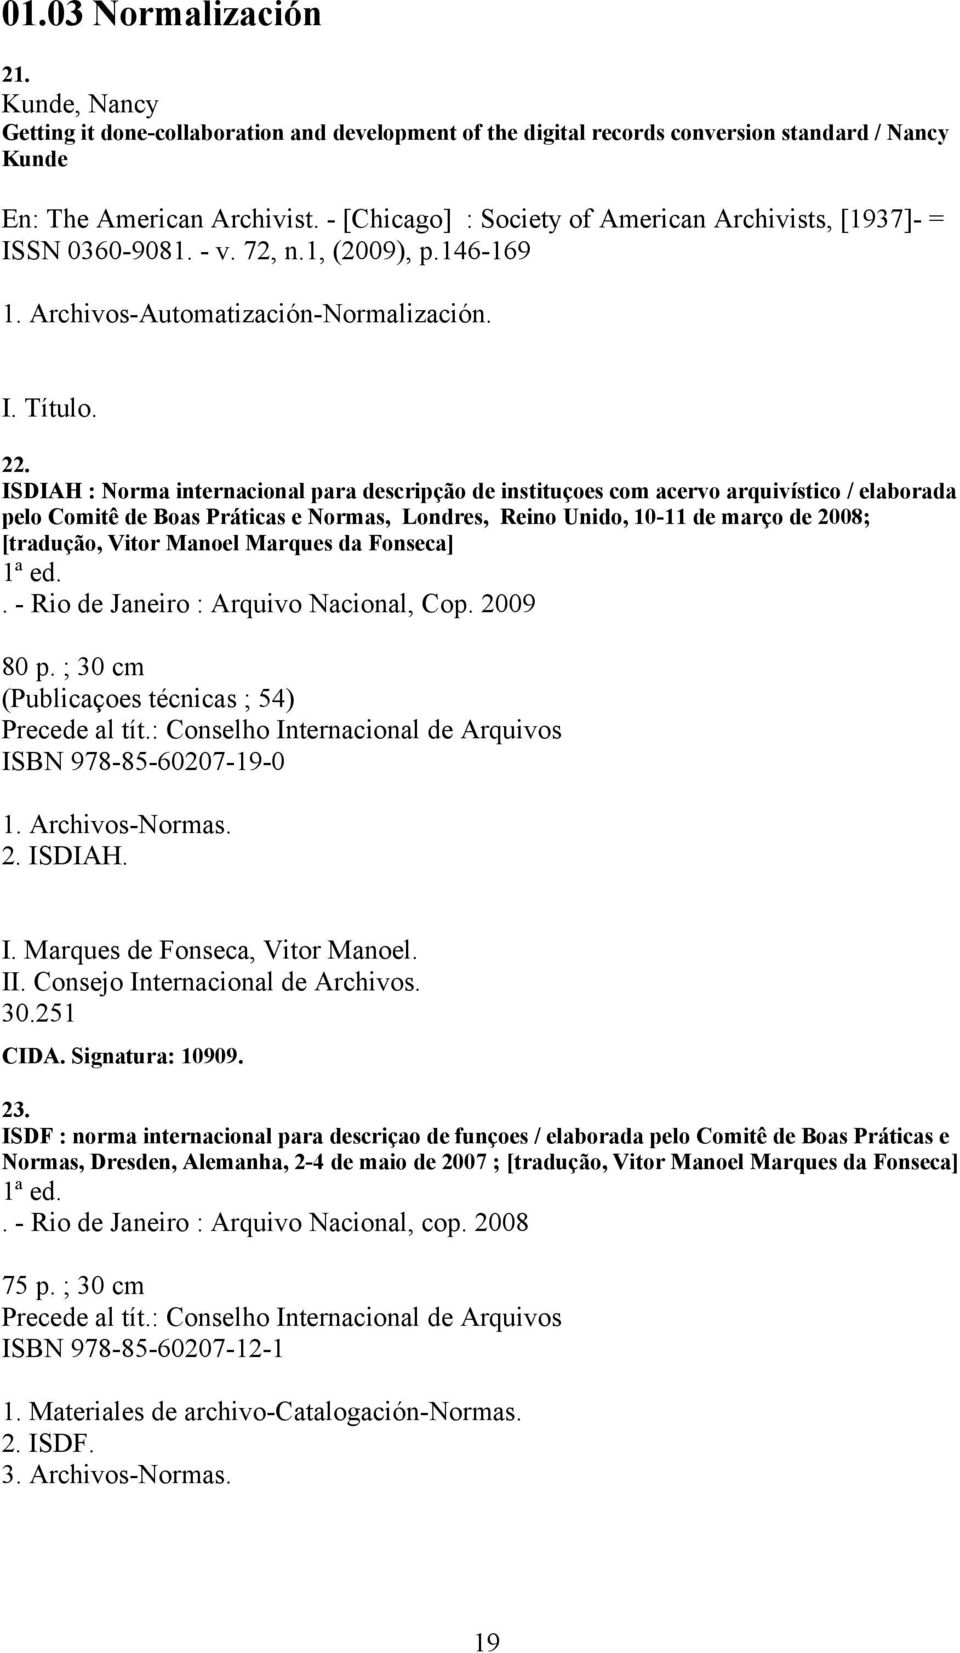 ISDIAH : Norma internacional para descripção de instituçoes com acervo arquivístico / elaborada pelo Comitê de Boas Práticas e Normas, Londres, Reino Unido, 10-11 de março de 2008; [tradução, Vitor